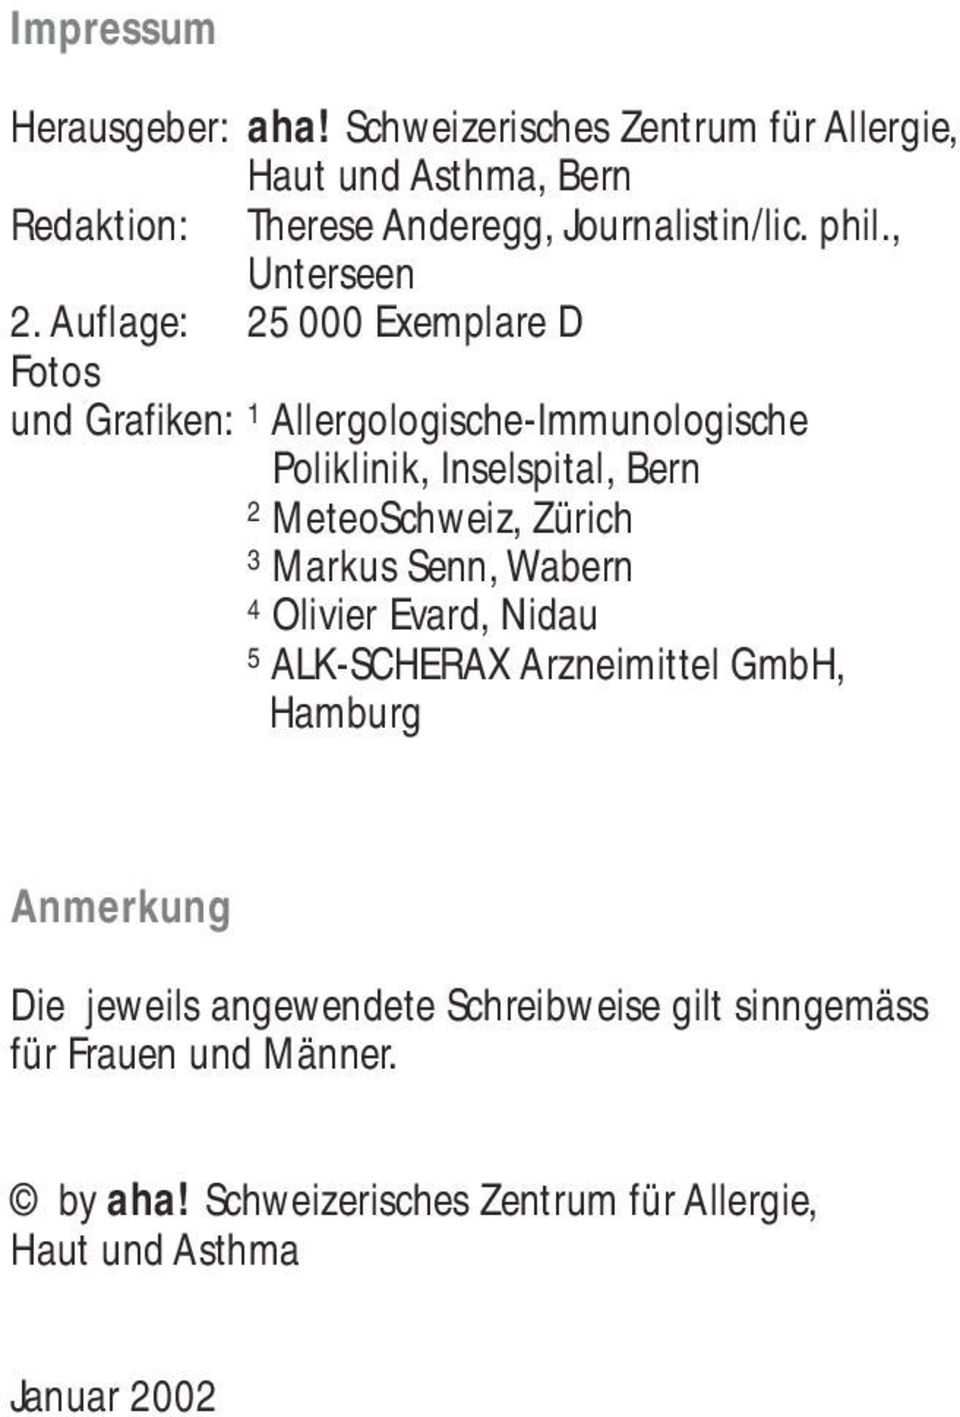 Auflage: 25 000 Exemplare D Fotos und Grafiken: 1 Allergologische-Immunologische 1 Poliklinik, Inselspital, Bern 2 MeteoSchweiz,